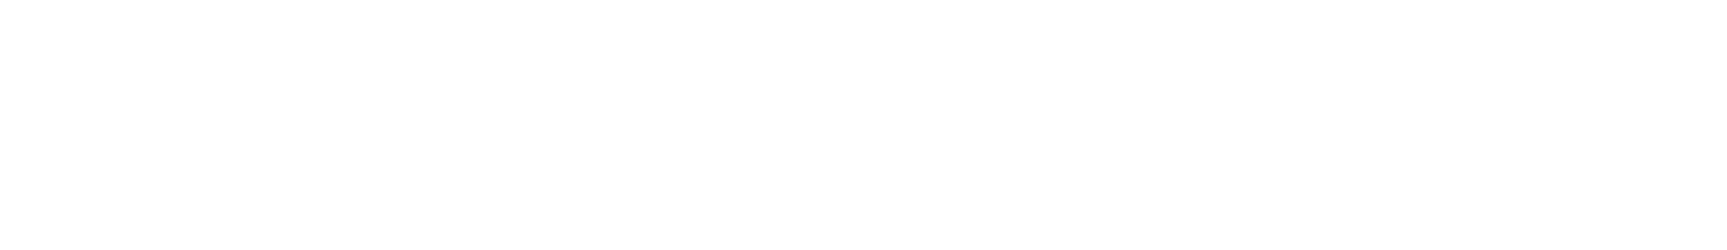 beyondbooks-mediothek-logo-weiss